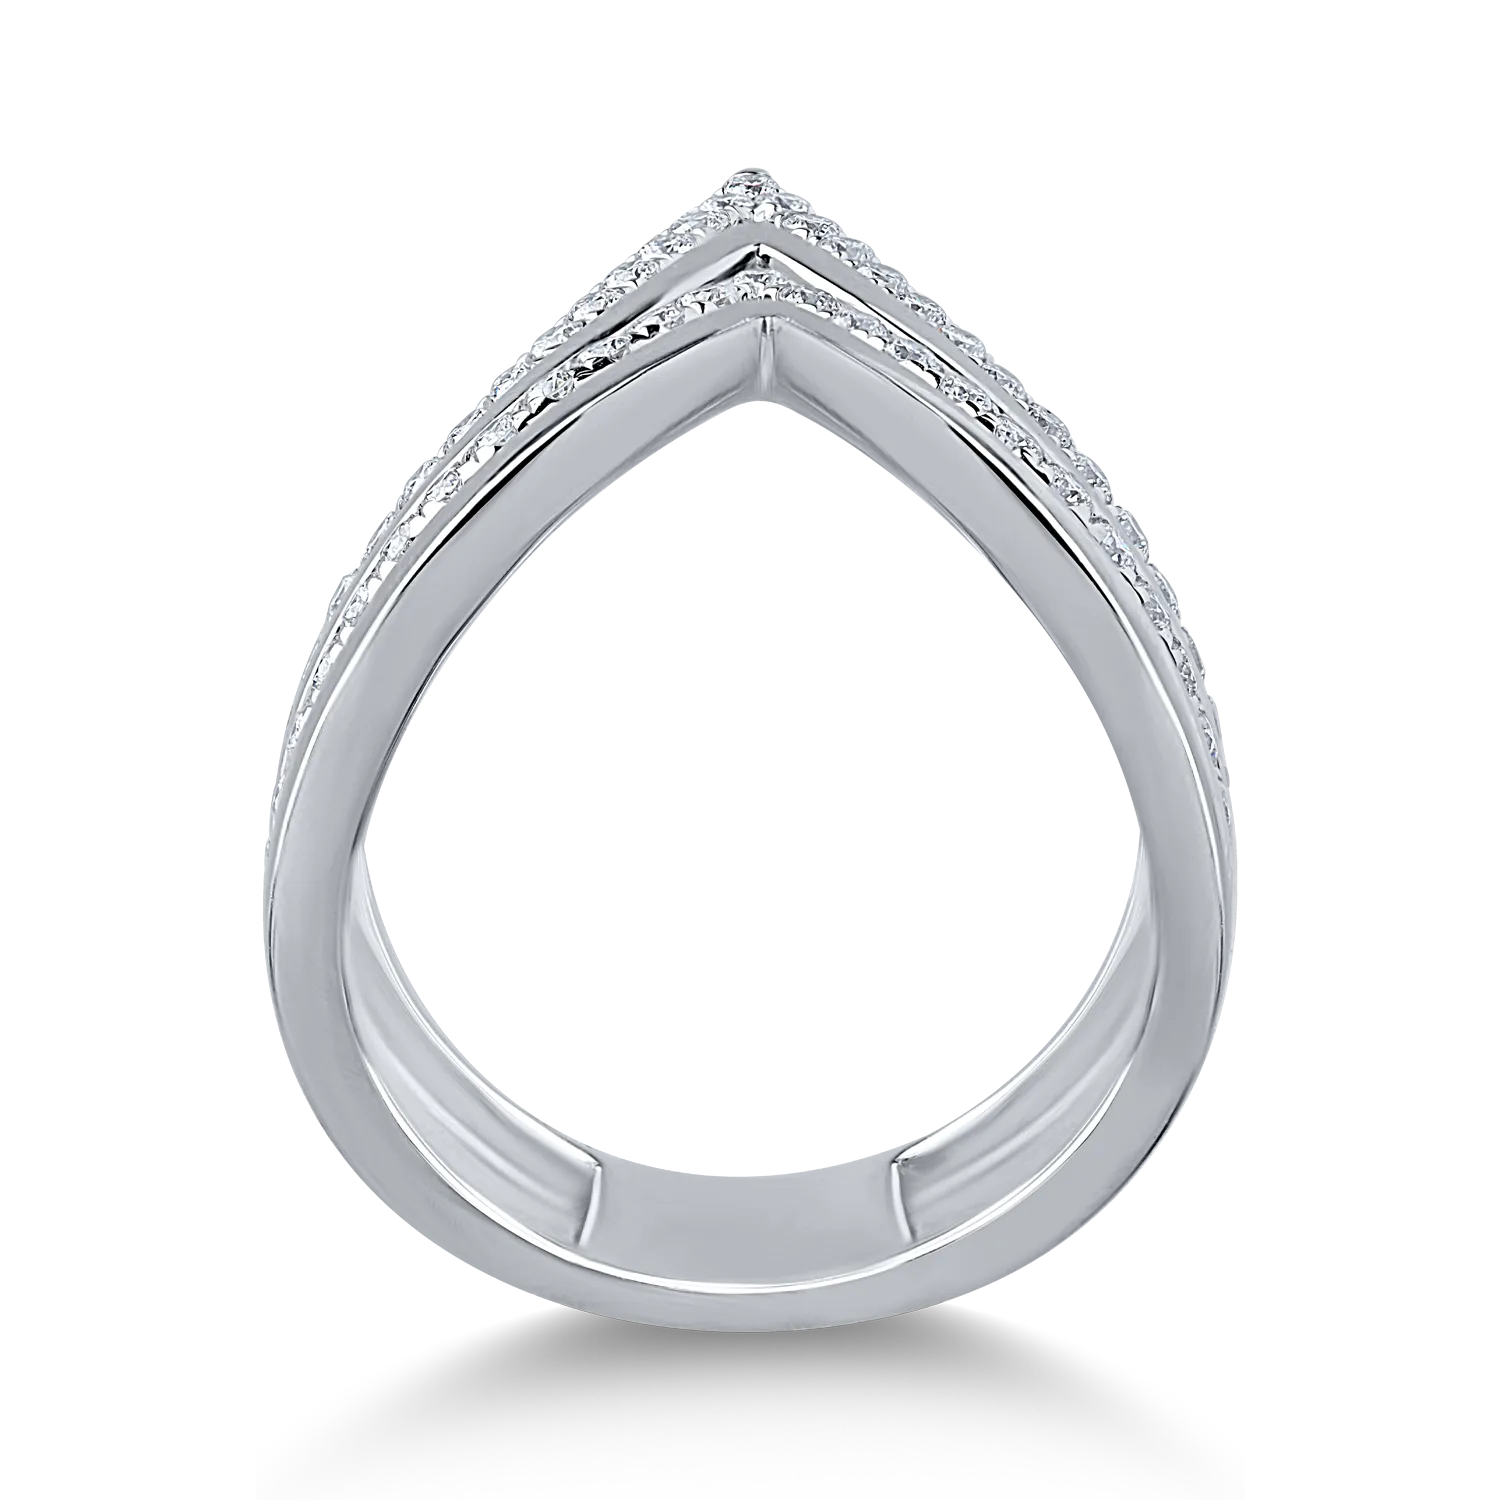 Fehérarany gyűrű 0.6ct gyémántokkal